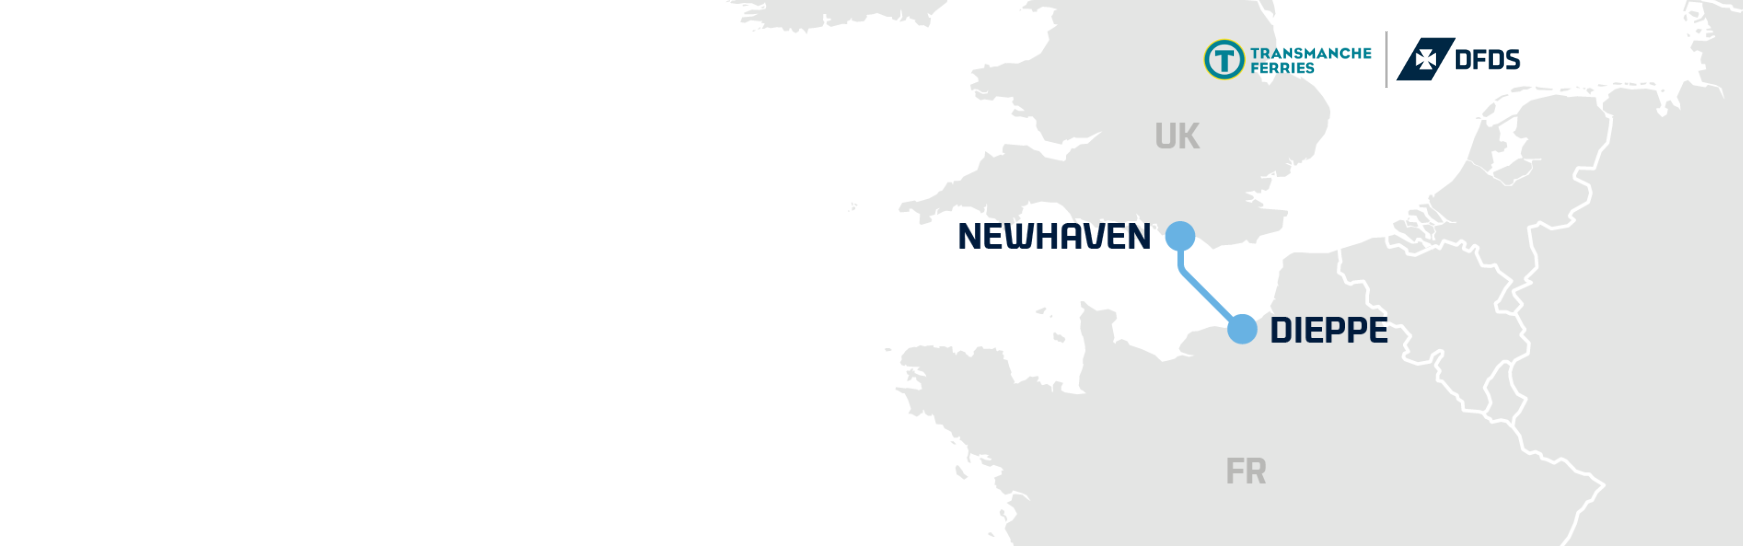 Newhaven-Dieppe hero